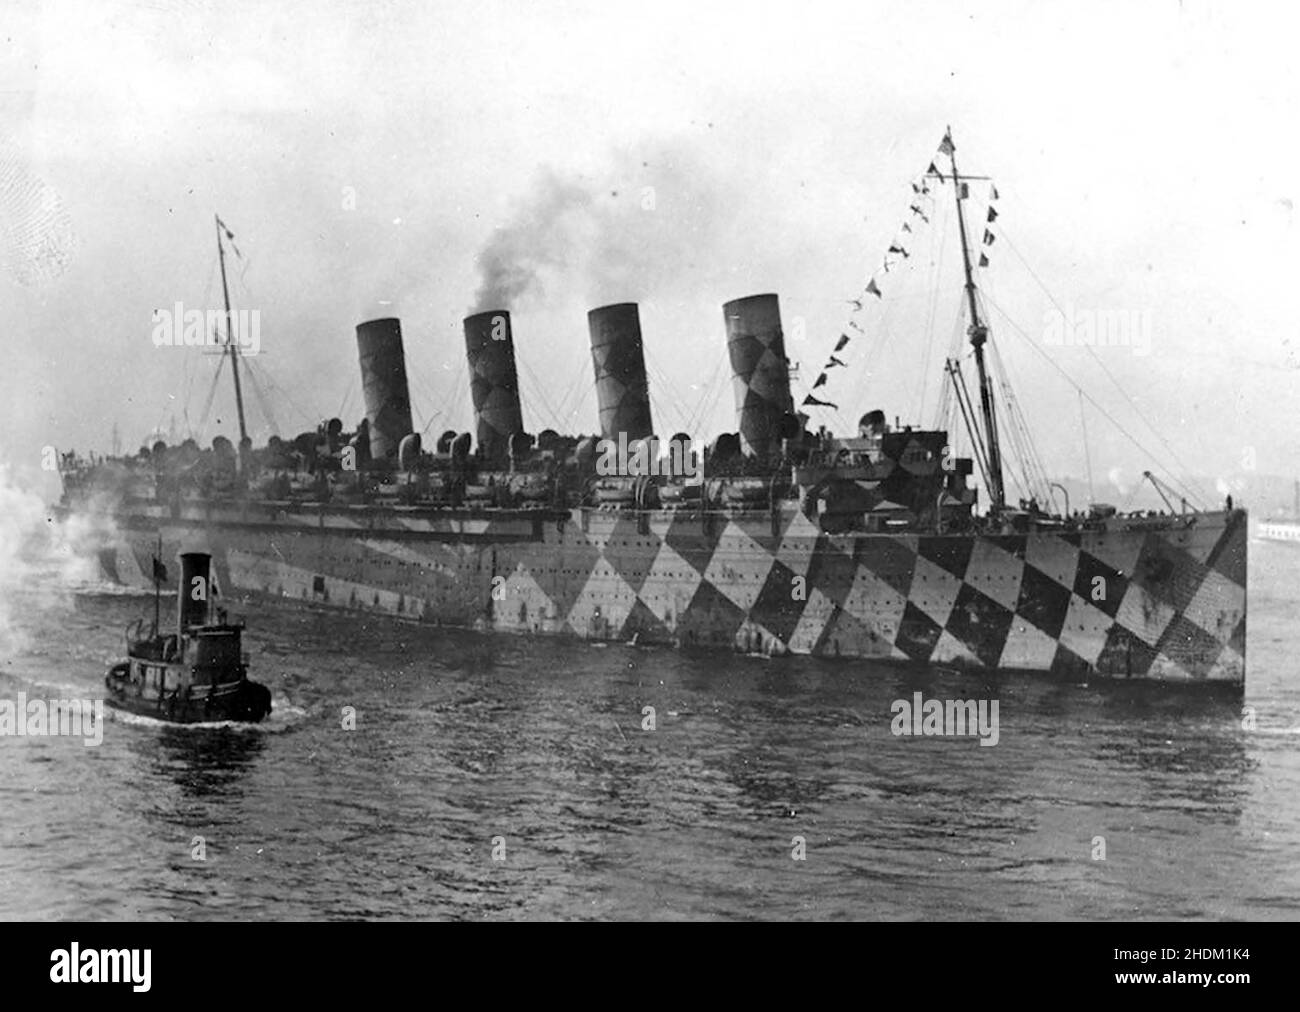 VERSAND TARNUNG erster Weltkrieg. Ehemaliges deutsches Schiff Vaterland, 1917 in USS Leviathan umbenannt, als Truppentransporter. Stockfoto